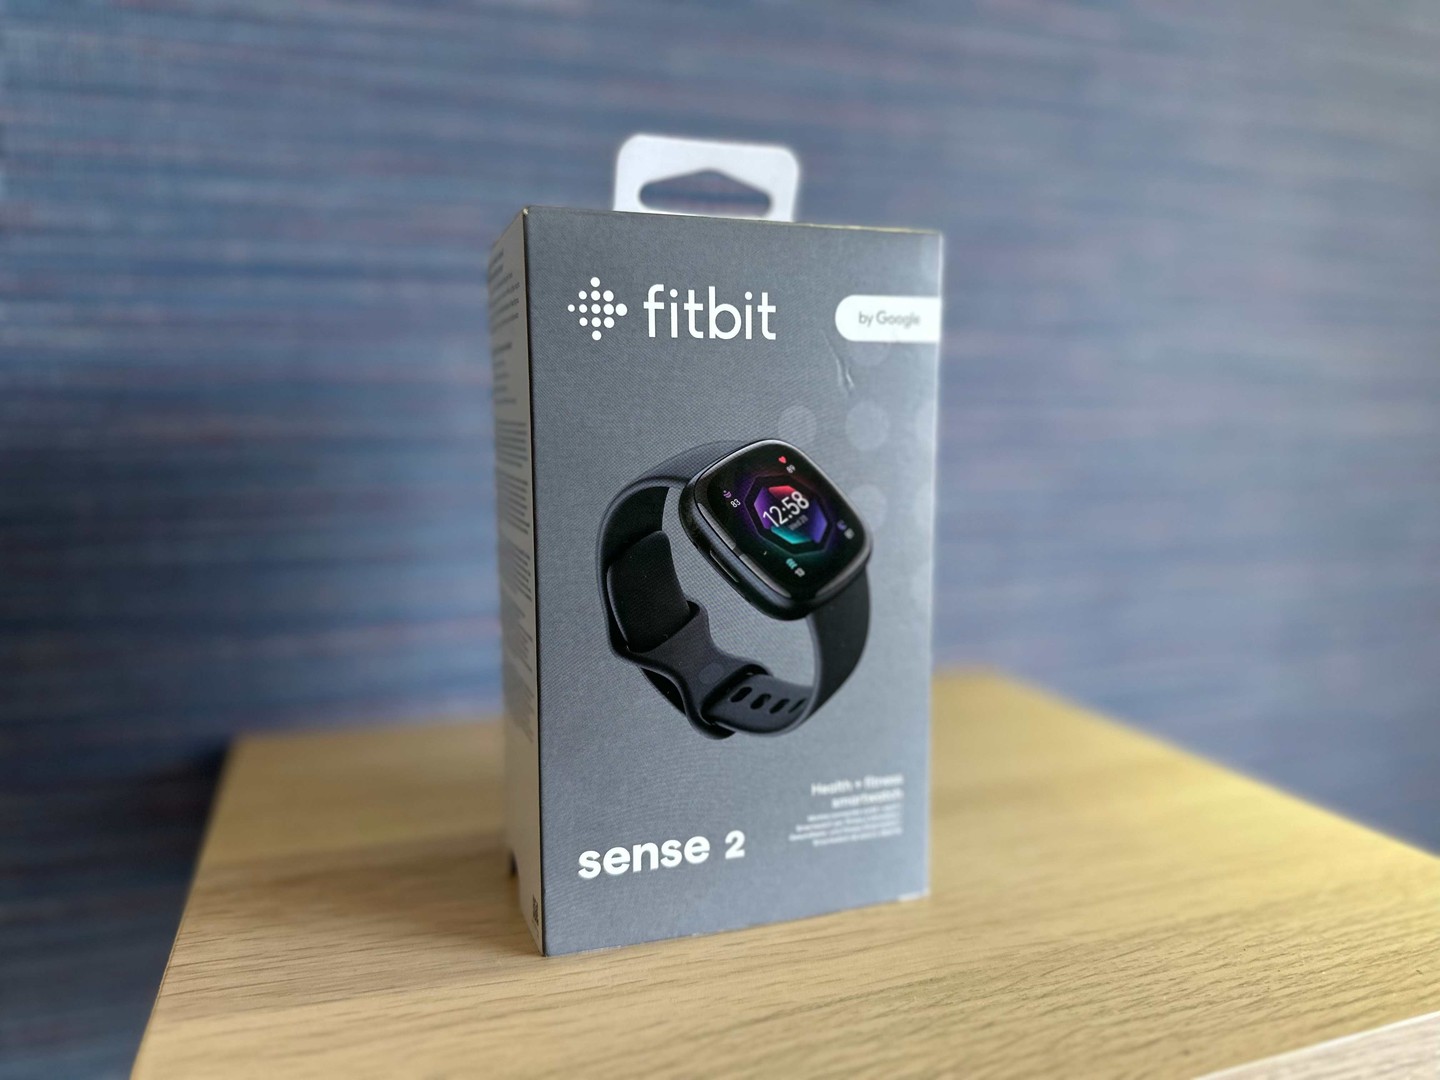 accesorios para electronica - Reloj Fitbit Sense 2 by Google (2022) Nuevo Sellado, Garantía,$ 10,900 NEG 0